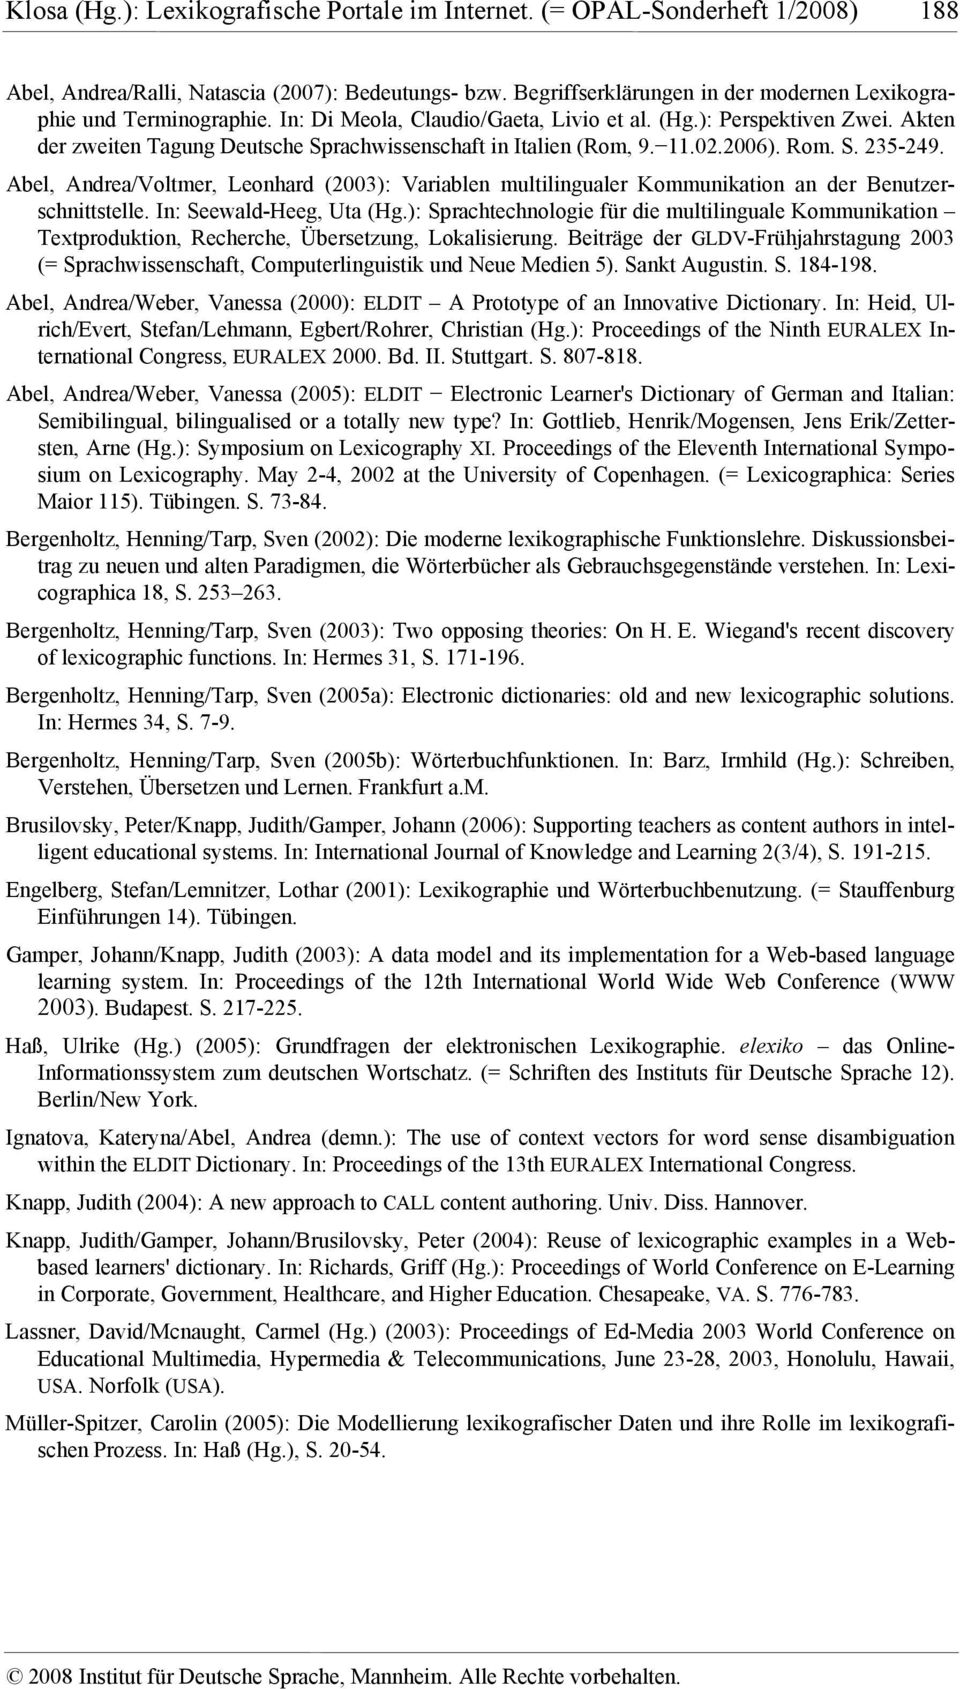 Akten der zweiten Tagung Deutsche Sprachwissenschaft in Italien (Rom, 9. 11.02.2006). Rom. S. 235-249.